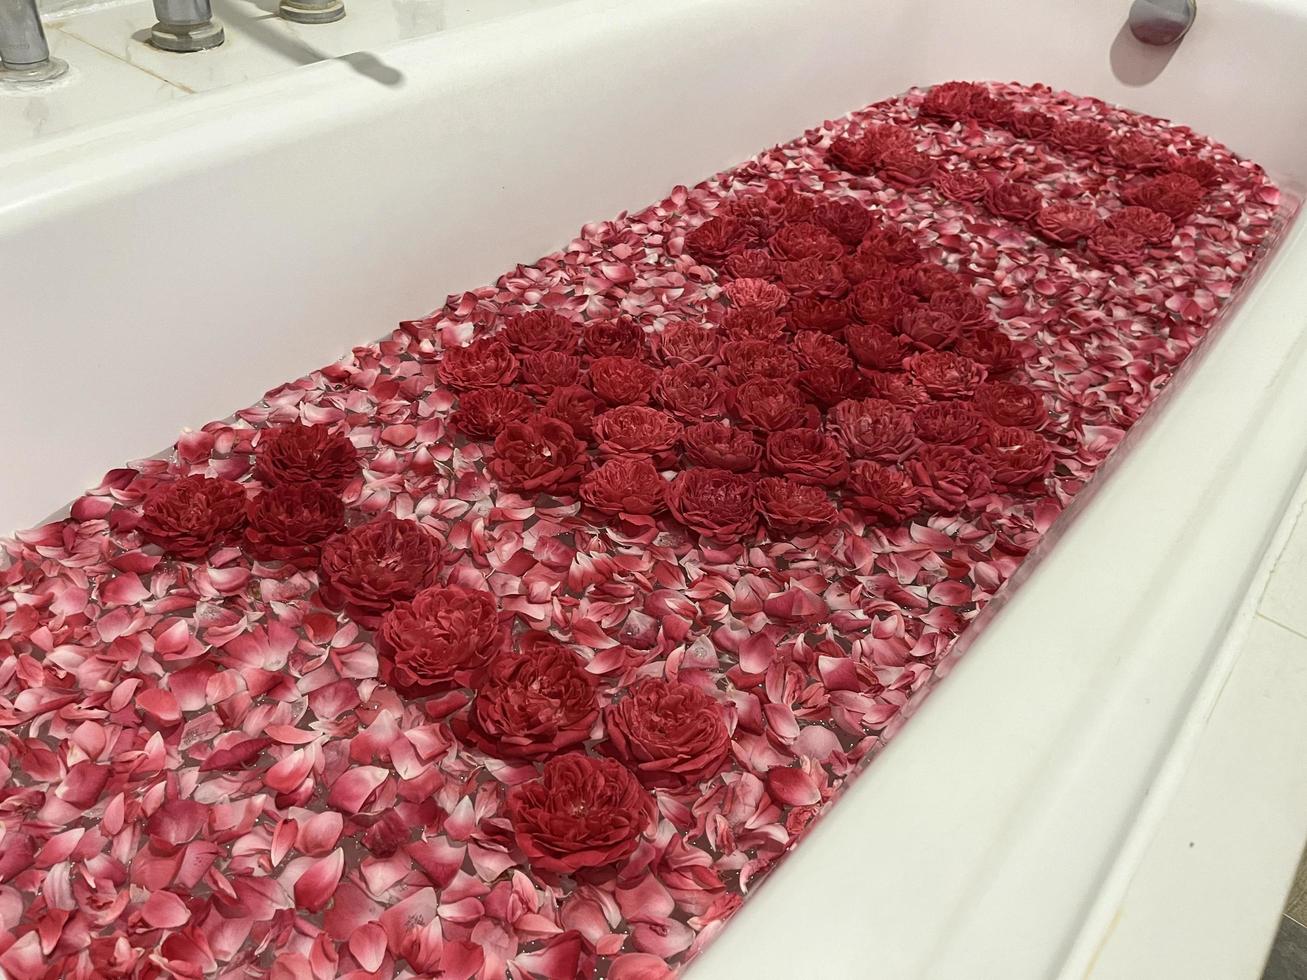 décoration rose pour les chambres au concept romantique. le parfum séduisant des roses. les roses sont soigneusement disposées et décorées pour former un cœur. les chambres d'hôtel sont préparées pour les couples qui partent en lune de miel. photo